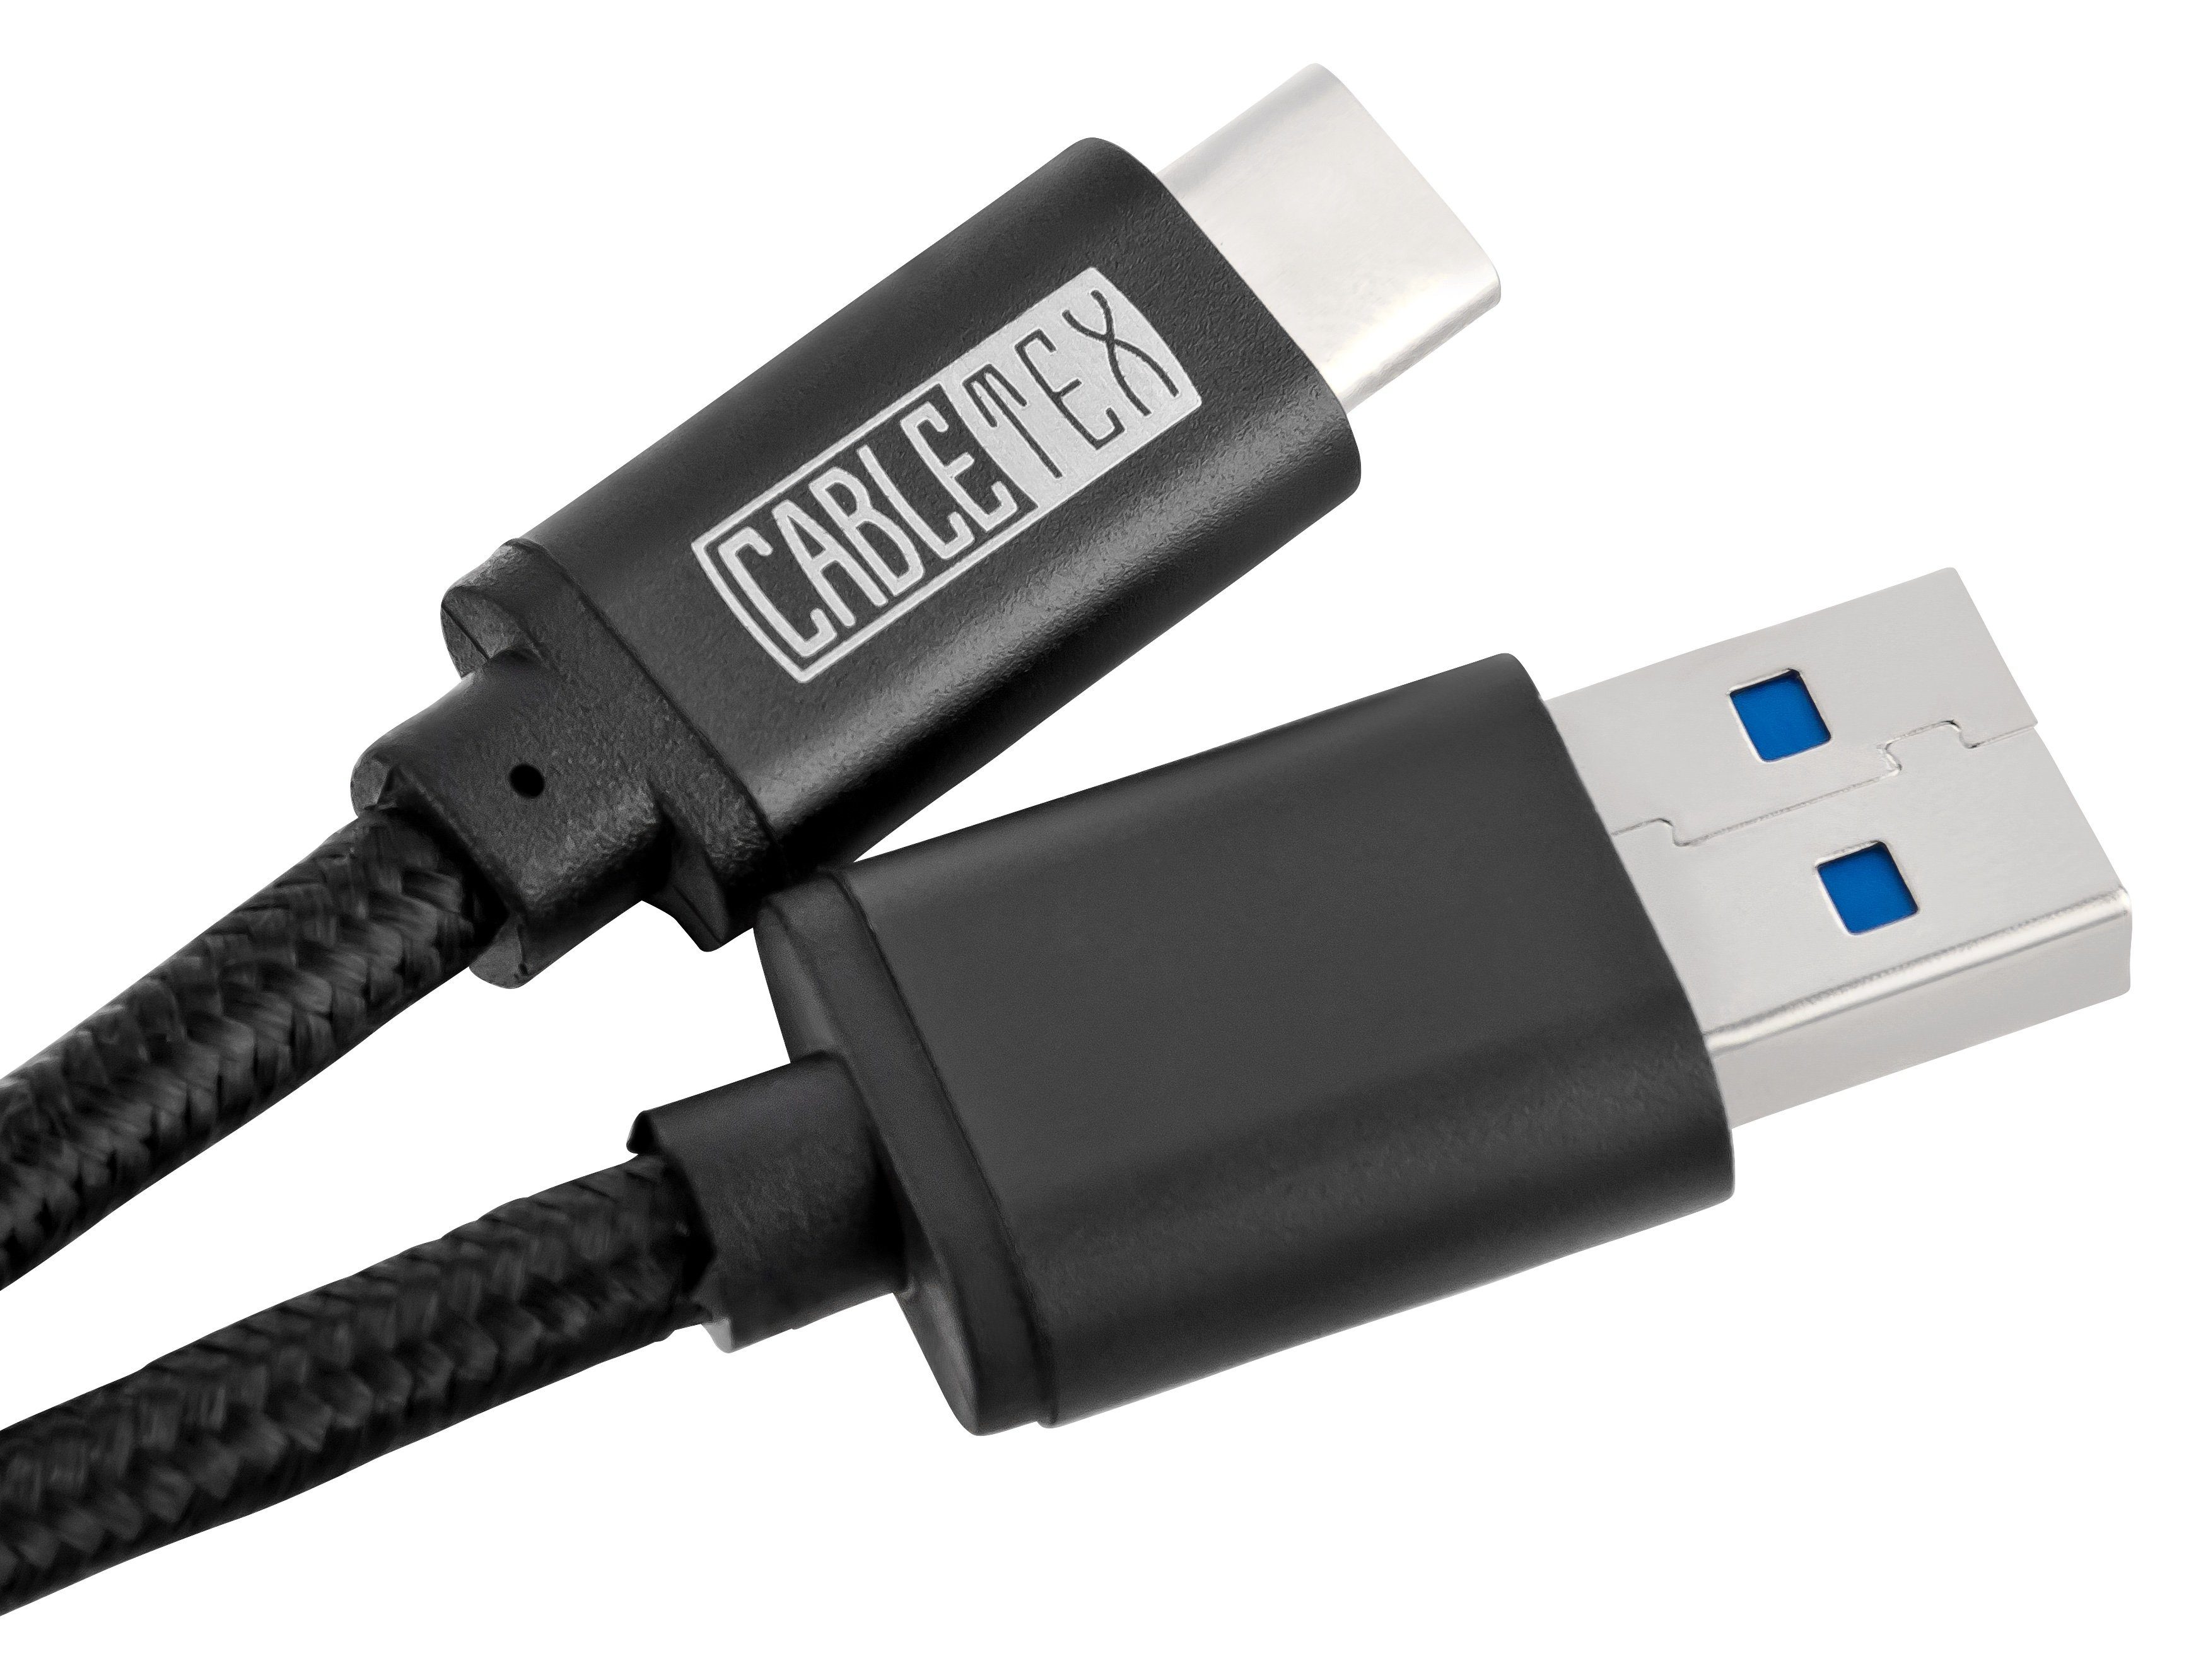 CABLETEX USB C Kabel USB 3.2, 1,5m Ladekabel Datenkabel, Computer &  Smartphones USB-Kabel, USB 3.0 Typ A, USB-C, USB-C, USB 3.0 Typ A (150 cm),  Ladekabel, Schnellladekabel, USB Kabel, Datenkabel, USB-C